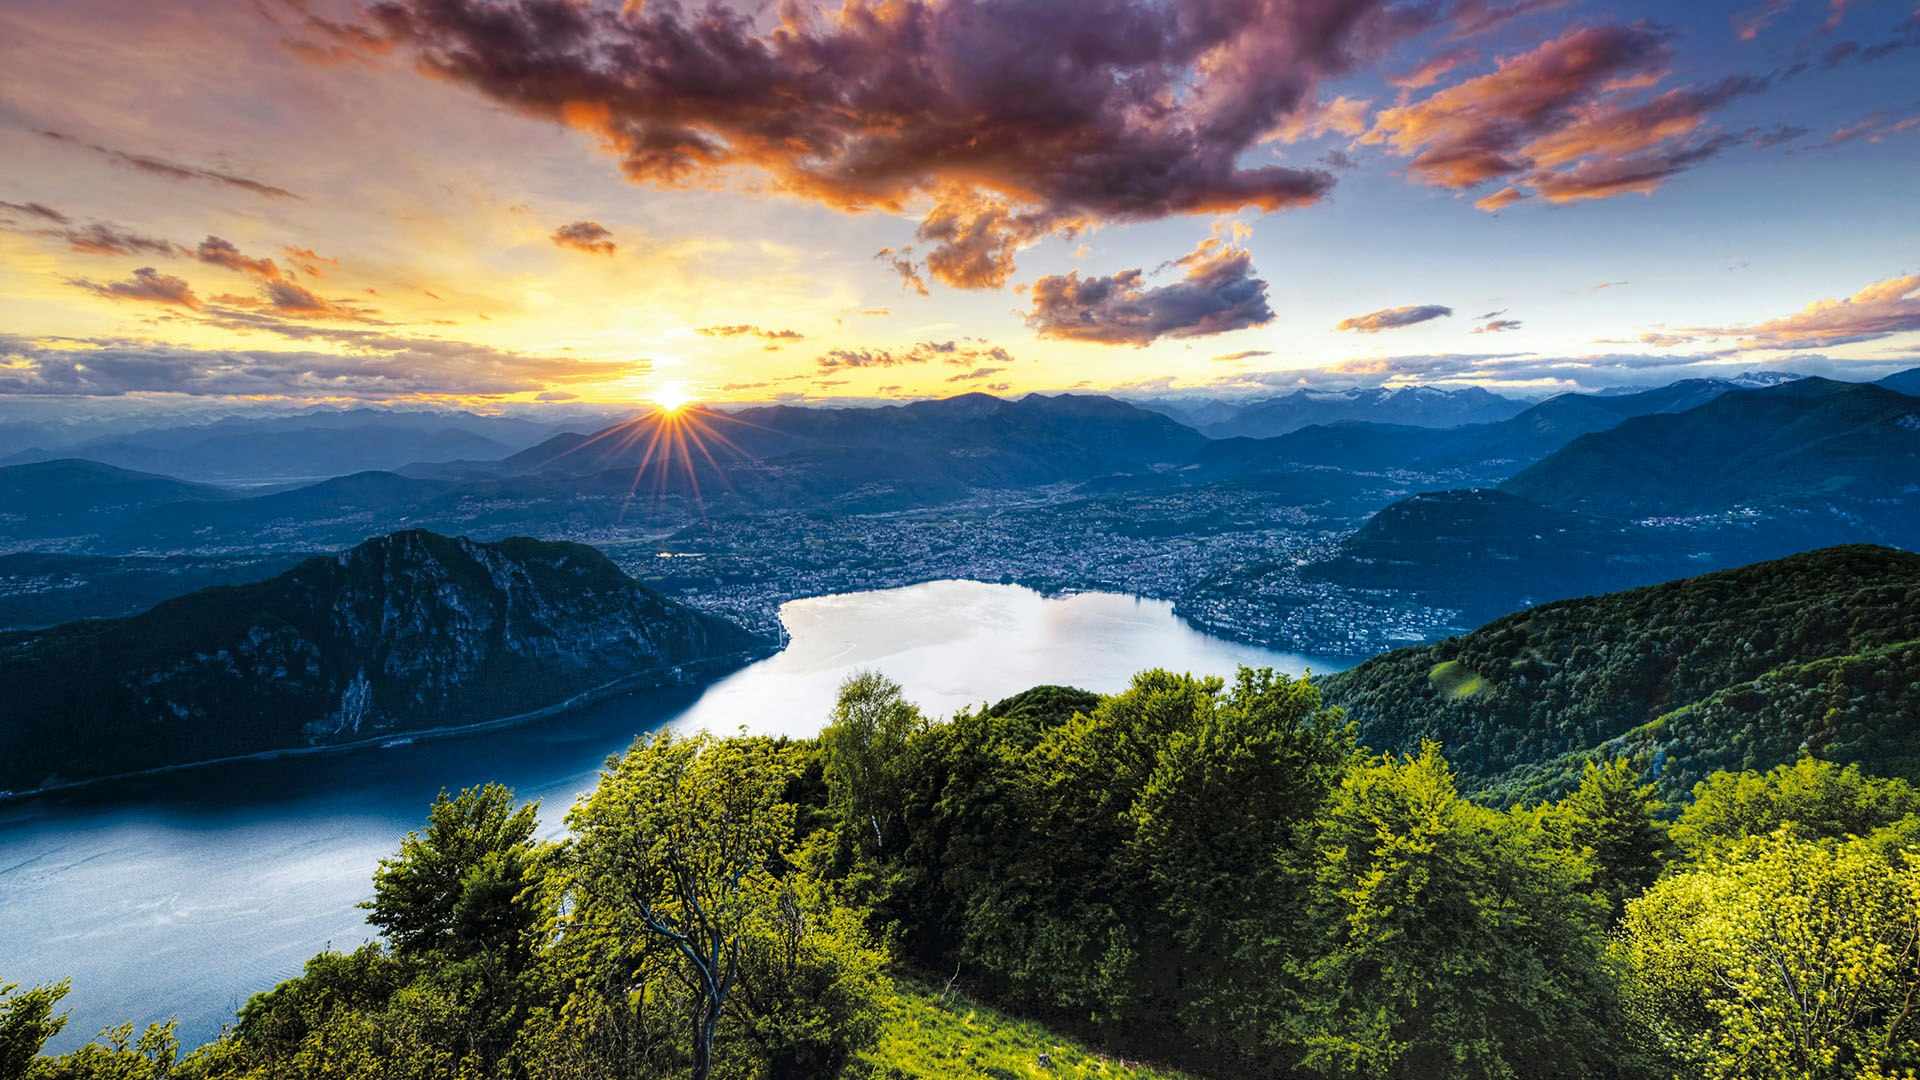 Sketchin Case Study - ERSL Ente Regionale per lo Sviluppo del Luganese - Panorama of Lake of Lugano, Switzerland